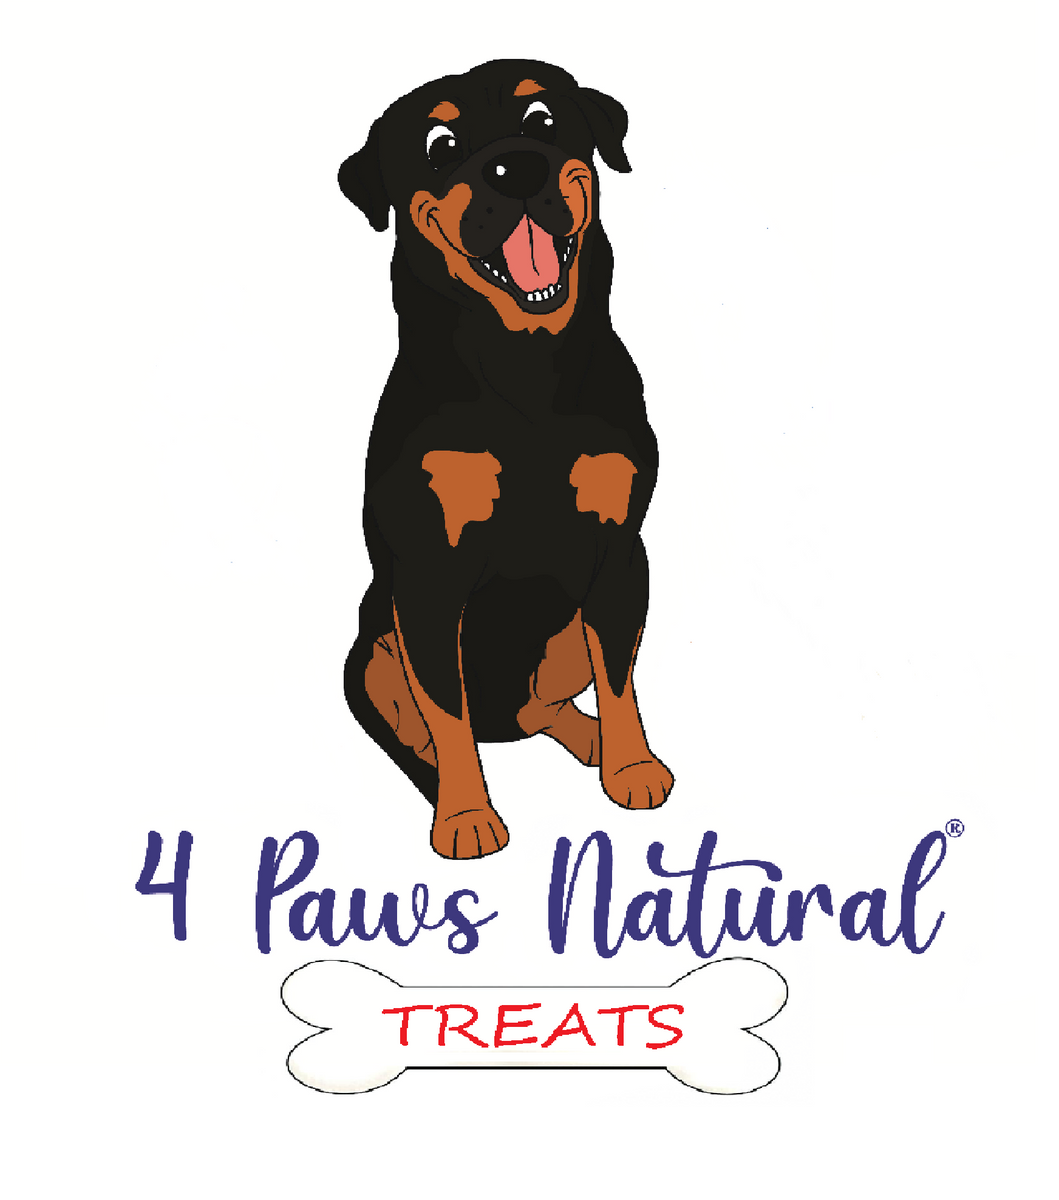 4 paws natural treats. 100% Australian made natural dog treats